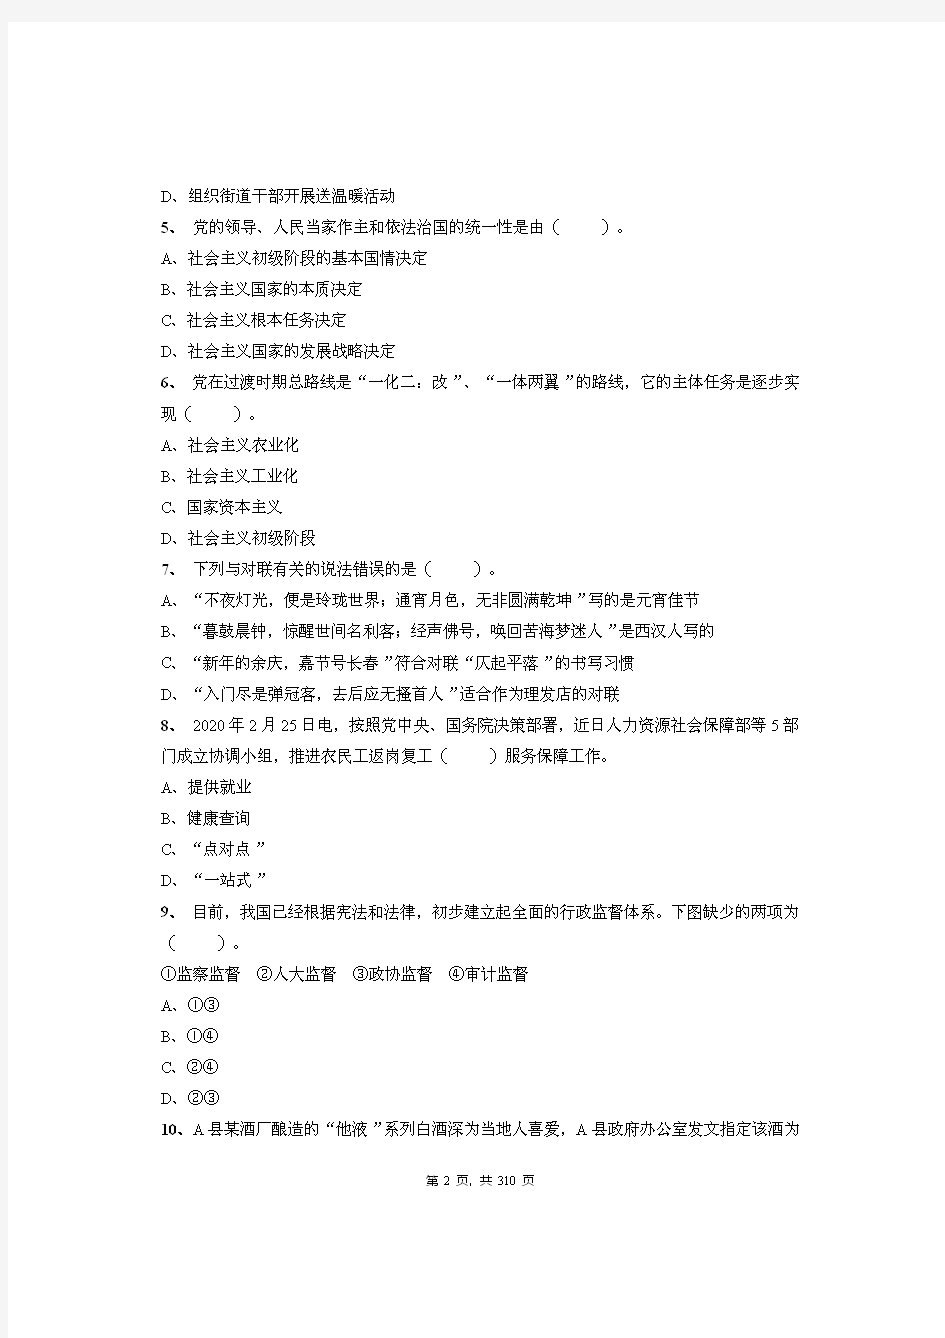 2020年安徽省安庆太湖县事业单位招聘考试《公共基础知识》绝密真题库及答案解析(上)